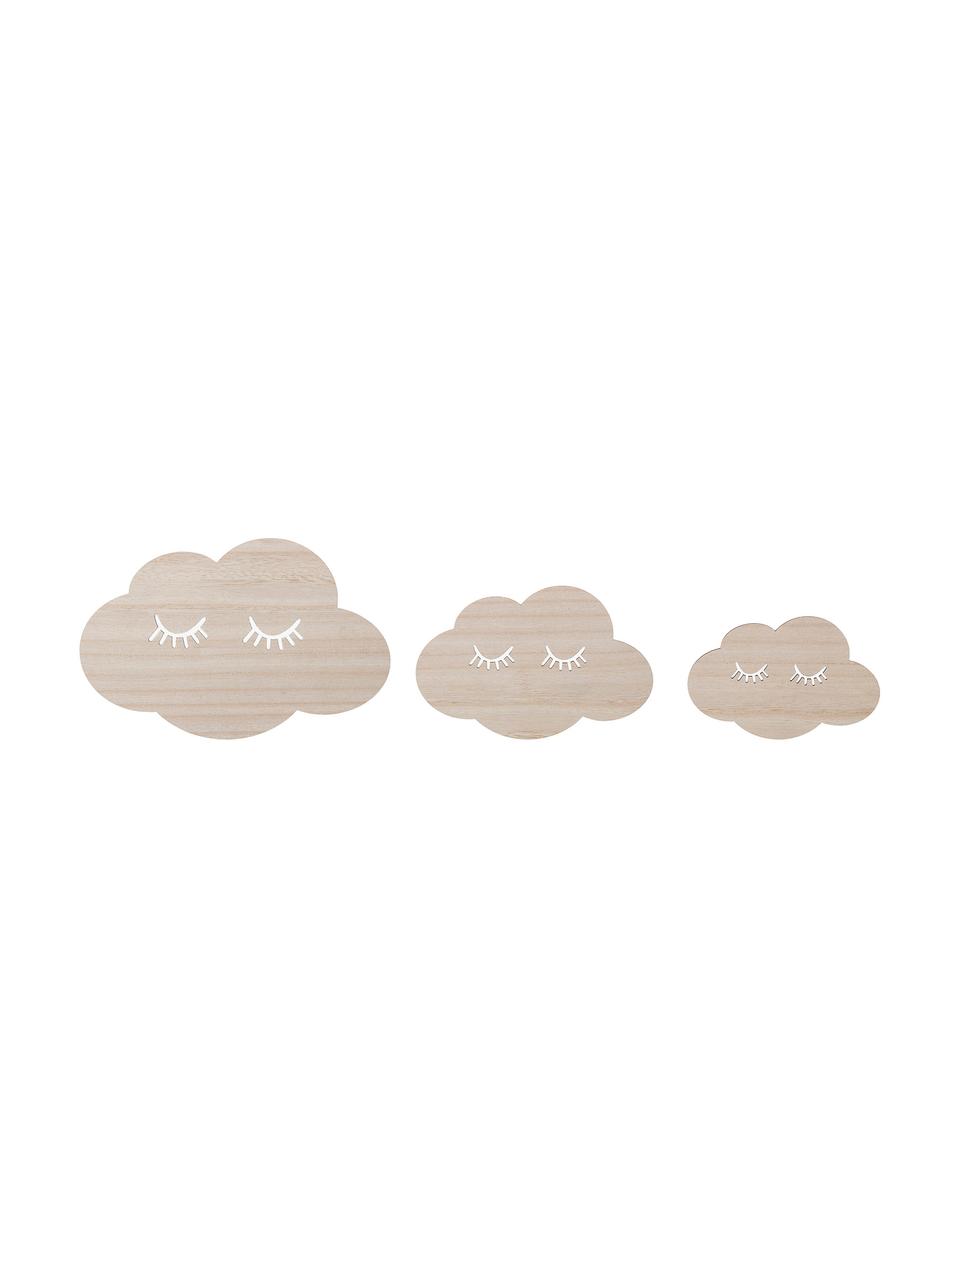 Komplet dekoracji ściennych Clouds, 3 elem., Drewno naturalne, Brązowy, S 21 x W 14 cm